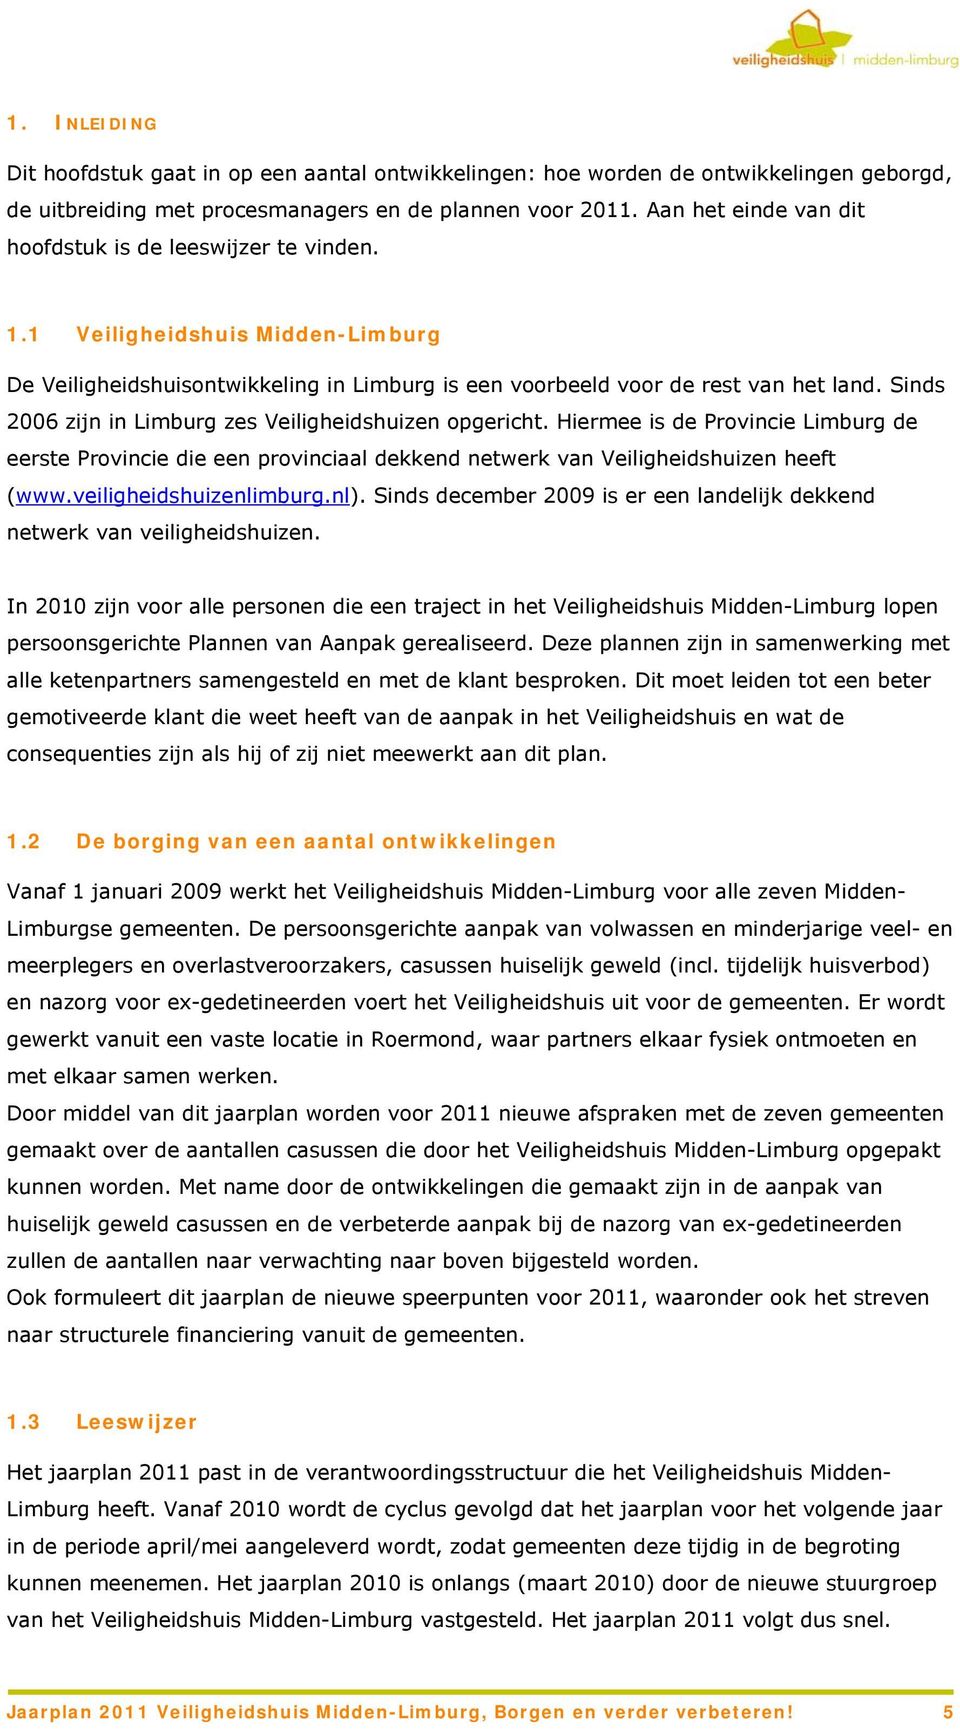 Sinds 2006 zijn in Limburg zes Veiligheidshuizen opgericht. Hiermee is de Provincie Limburg de eerste Provincie die een provinciaal dekkend netwerk van Veiligheidshuizen heeft (www.